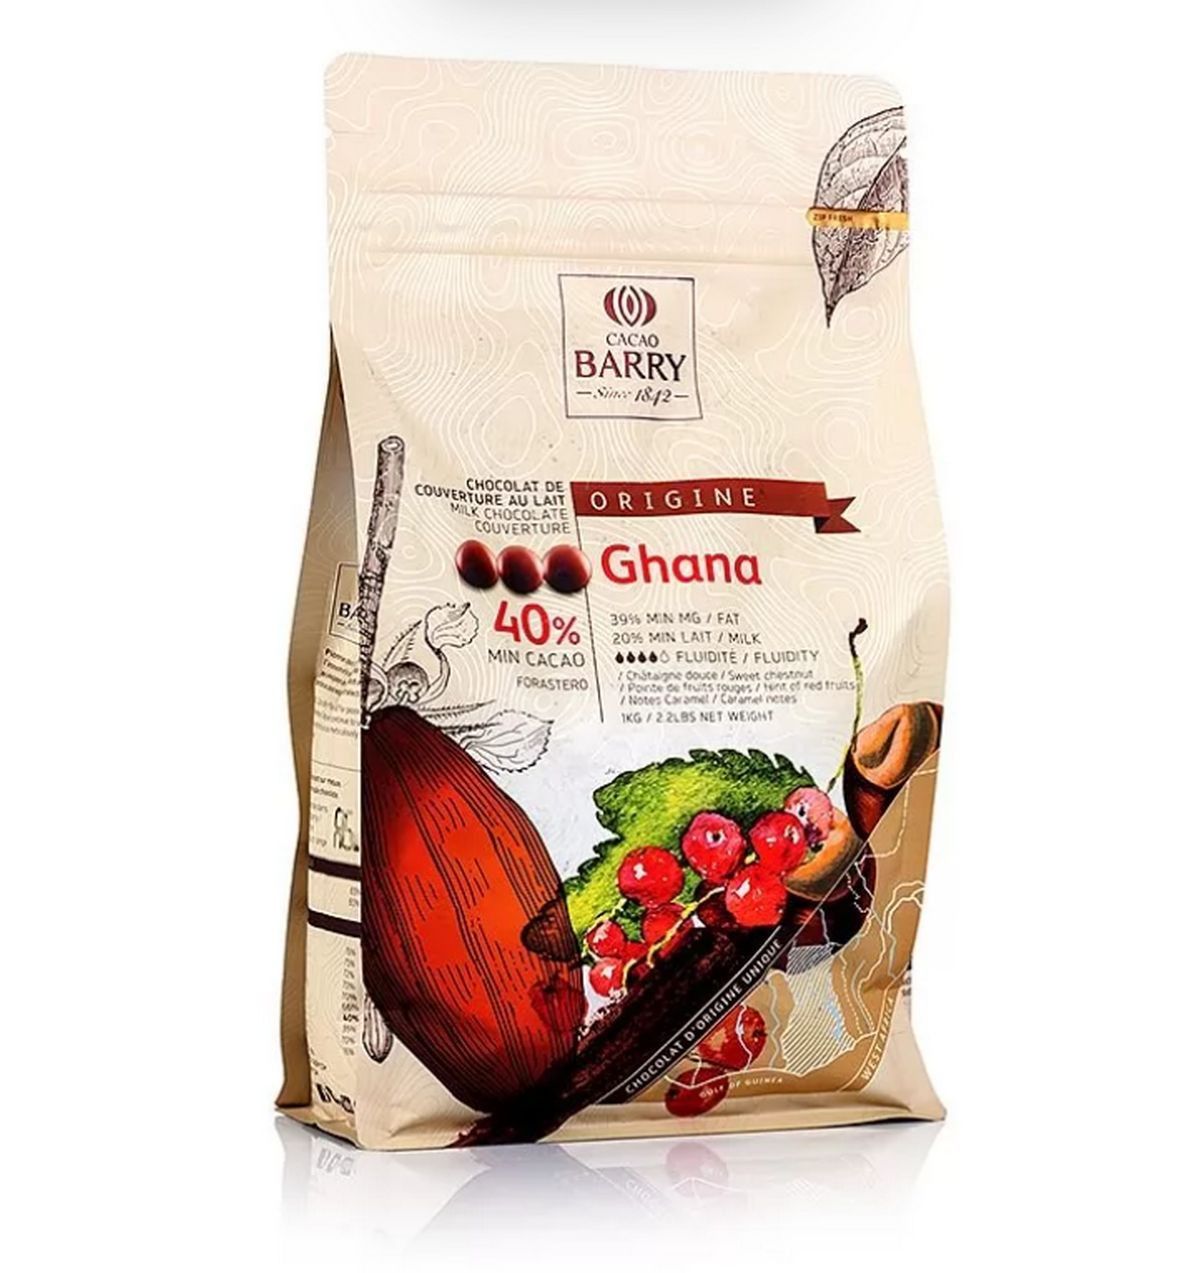 ⋗ Молочный шоколад Ghana Cacao barry 40%, 100г купить в Украине ➛ CakeShop.com.ua, фото